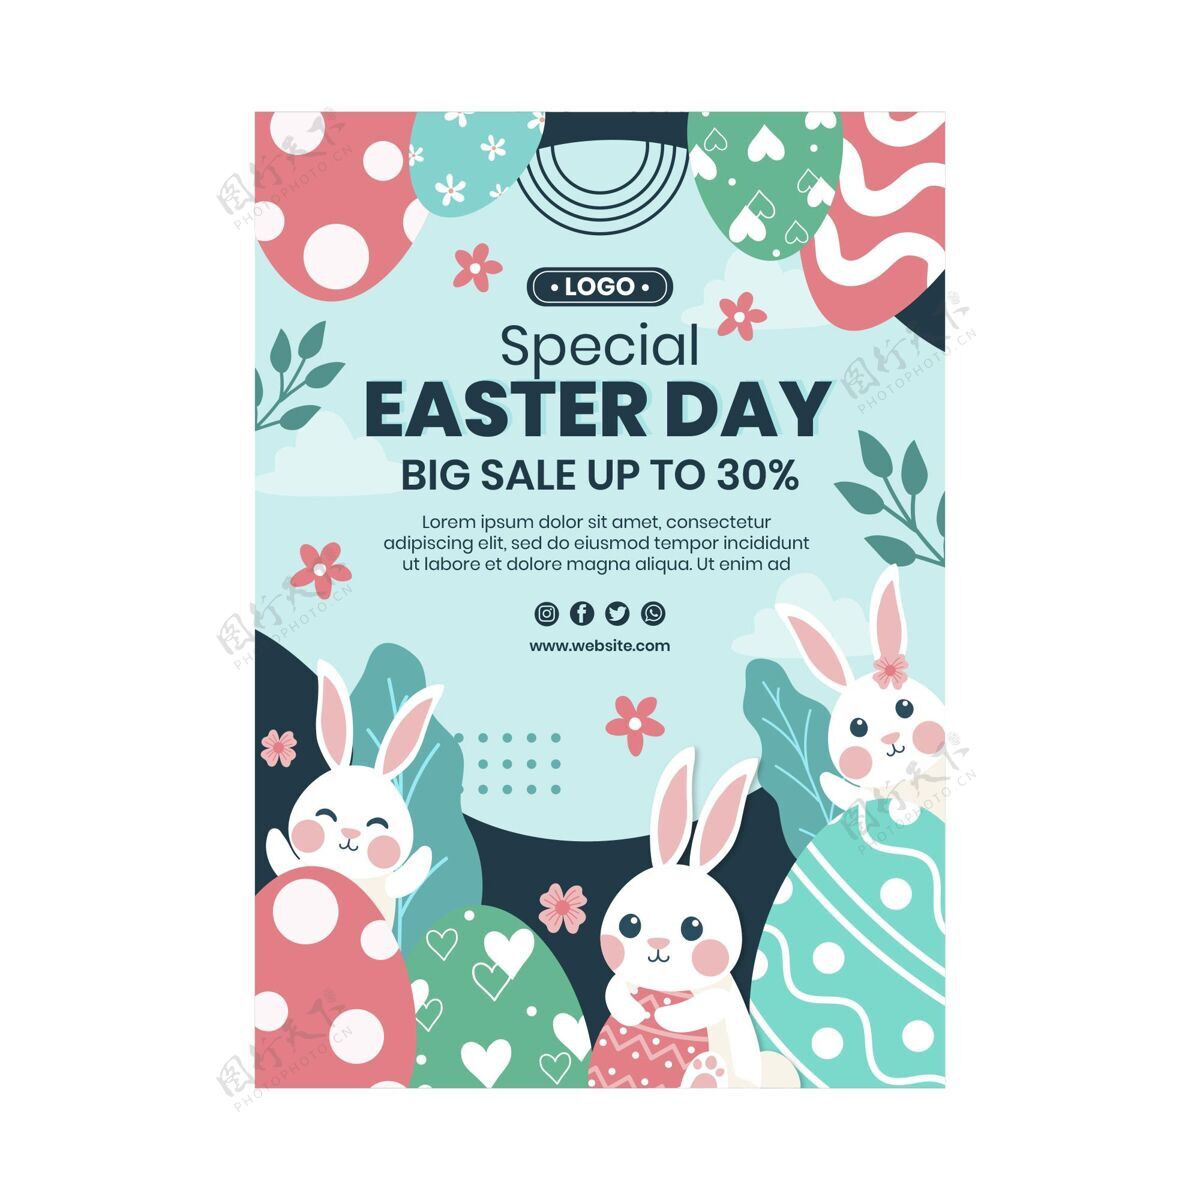 复活节复活节销售垂直海报模板基督教复活节兔子模板